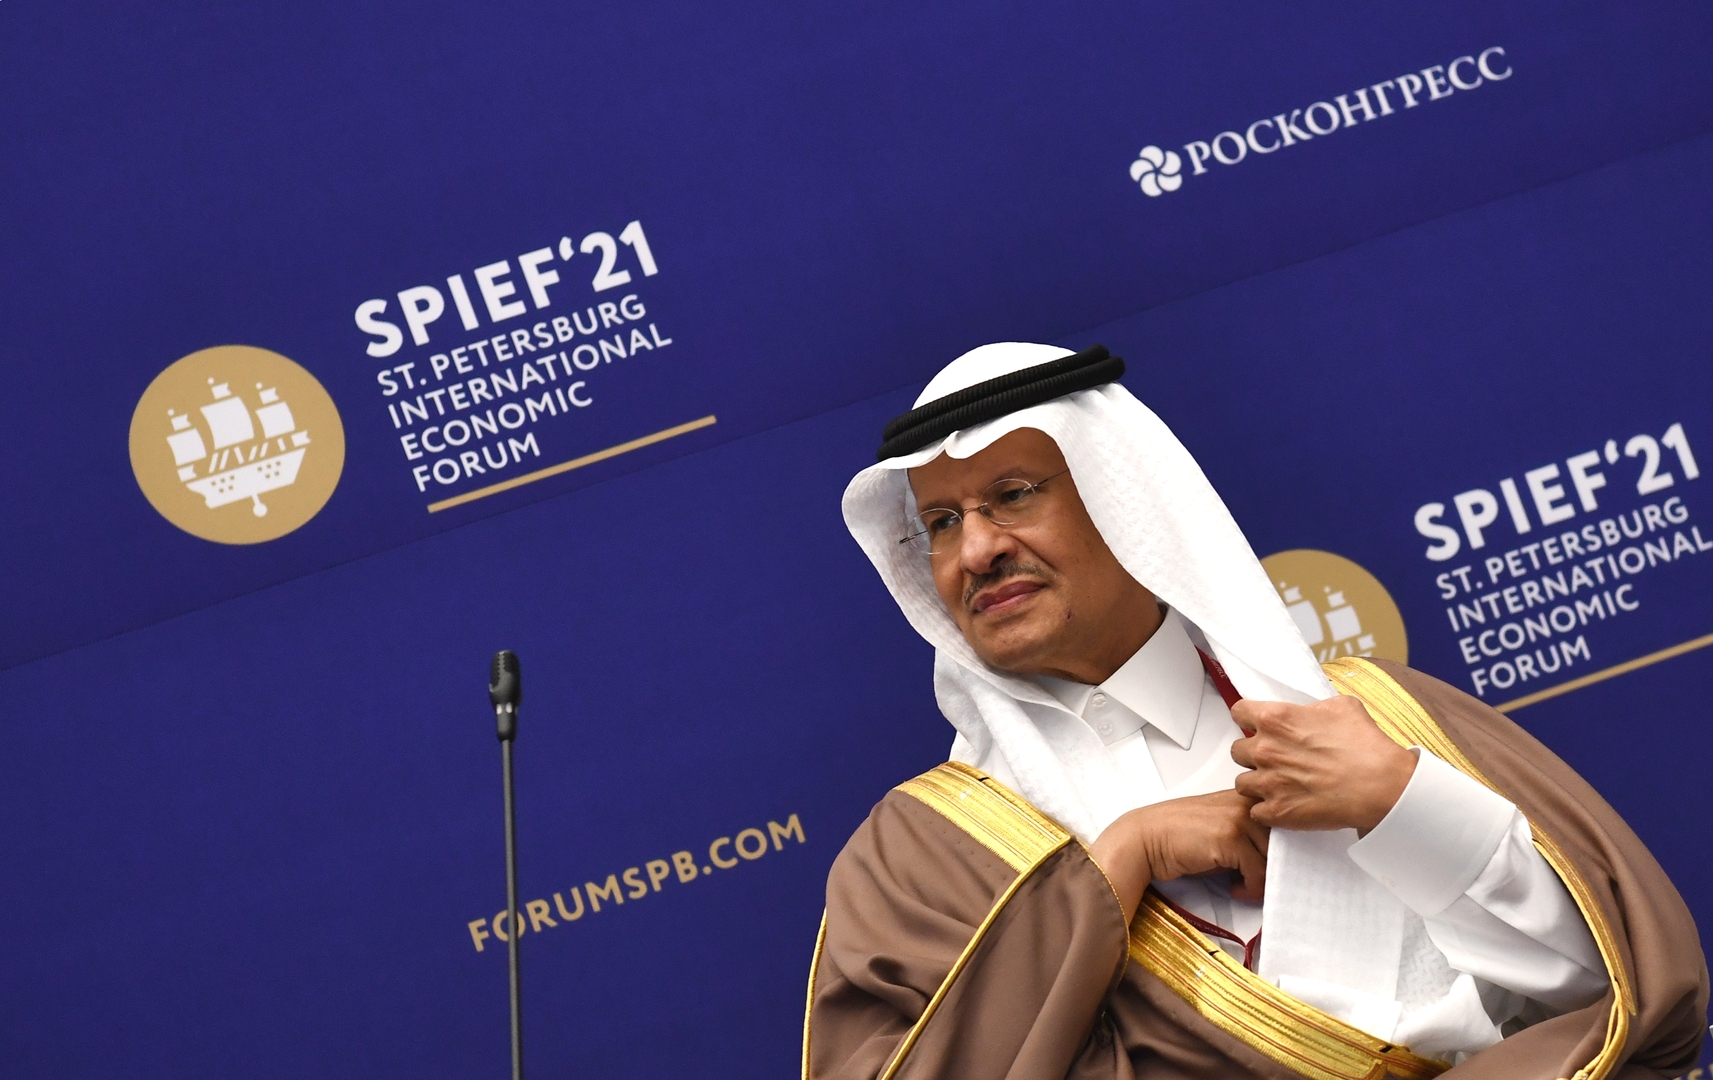 وزير الطاقة السعودي: نستثمر في كل ما يساهم في انتقال مناسب للطاقة الخضراء بالسعودية